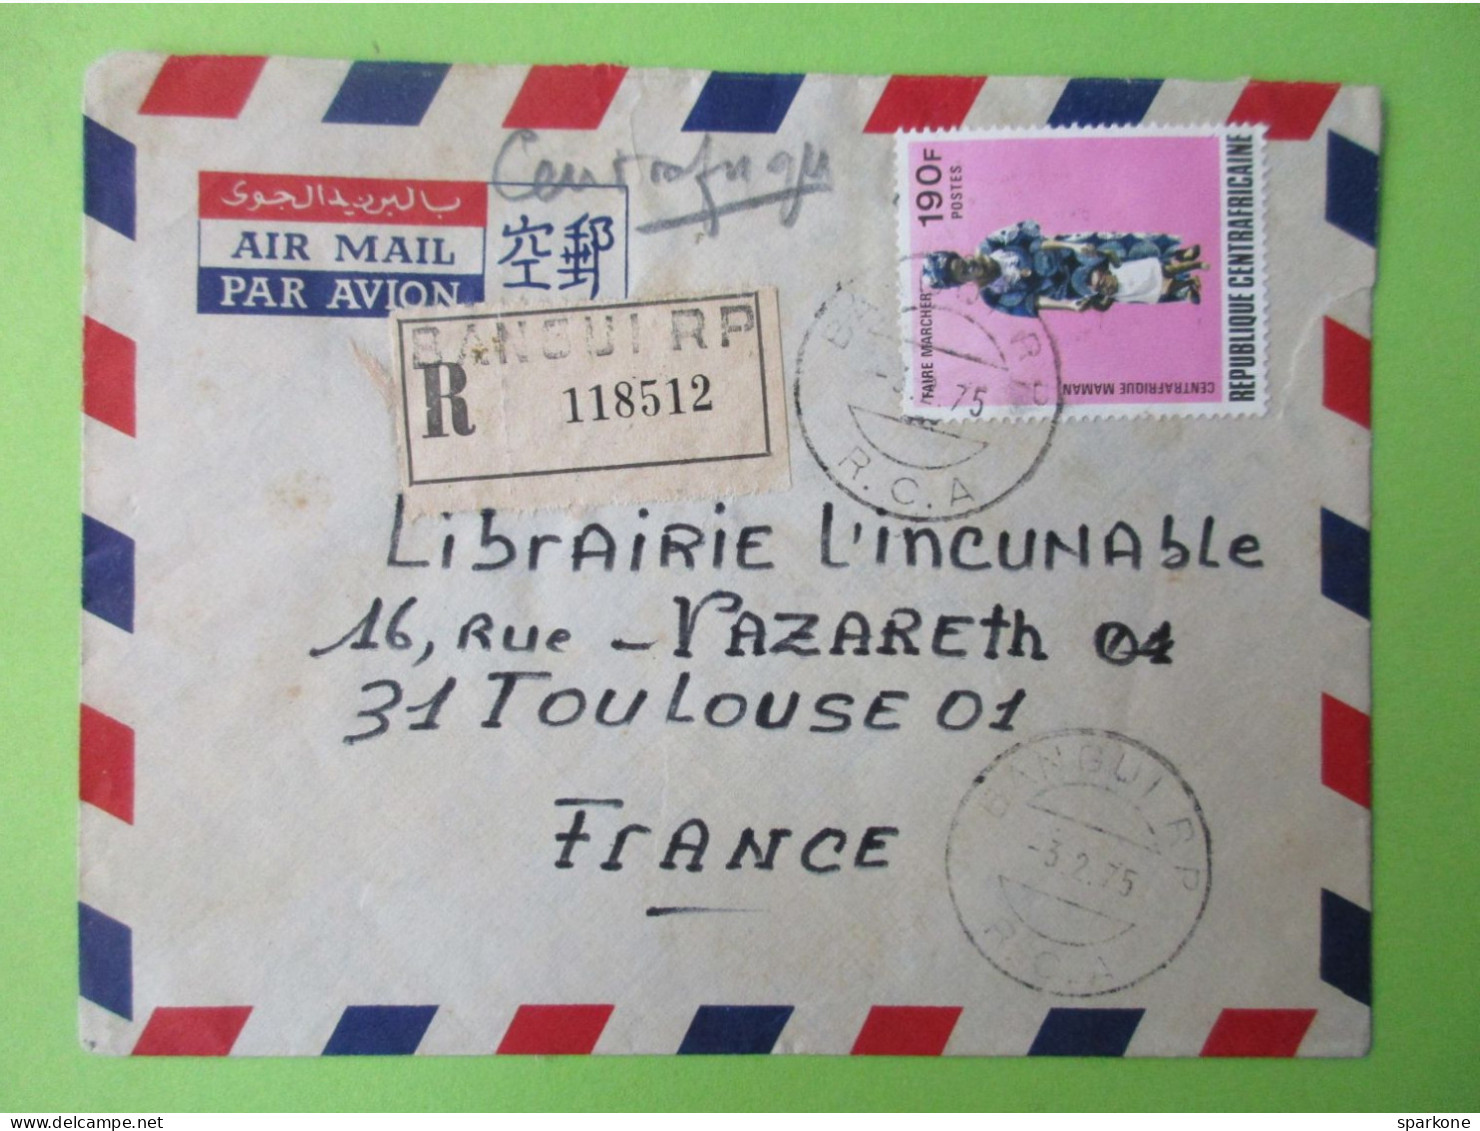 Marcophilie - Enveloppe - Par Avion - Recommandé - Bangui Vers La France - 1975 - Central African Republic